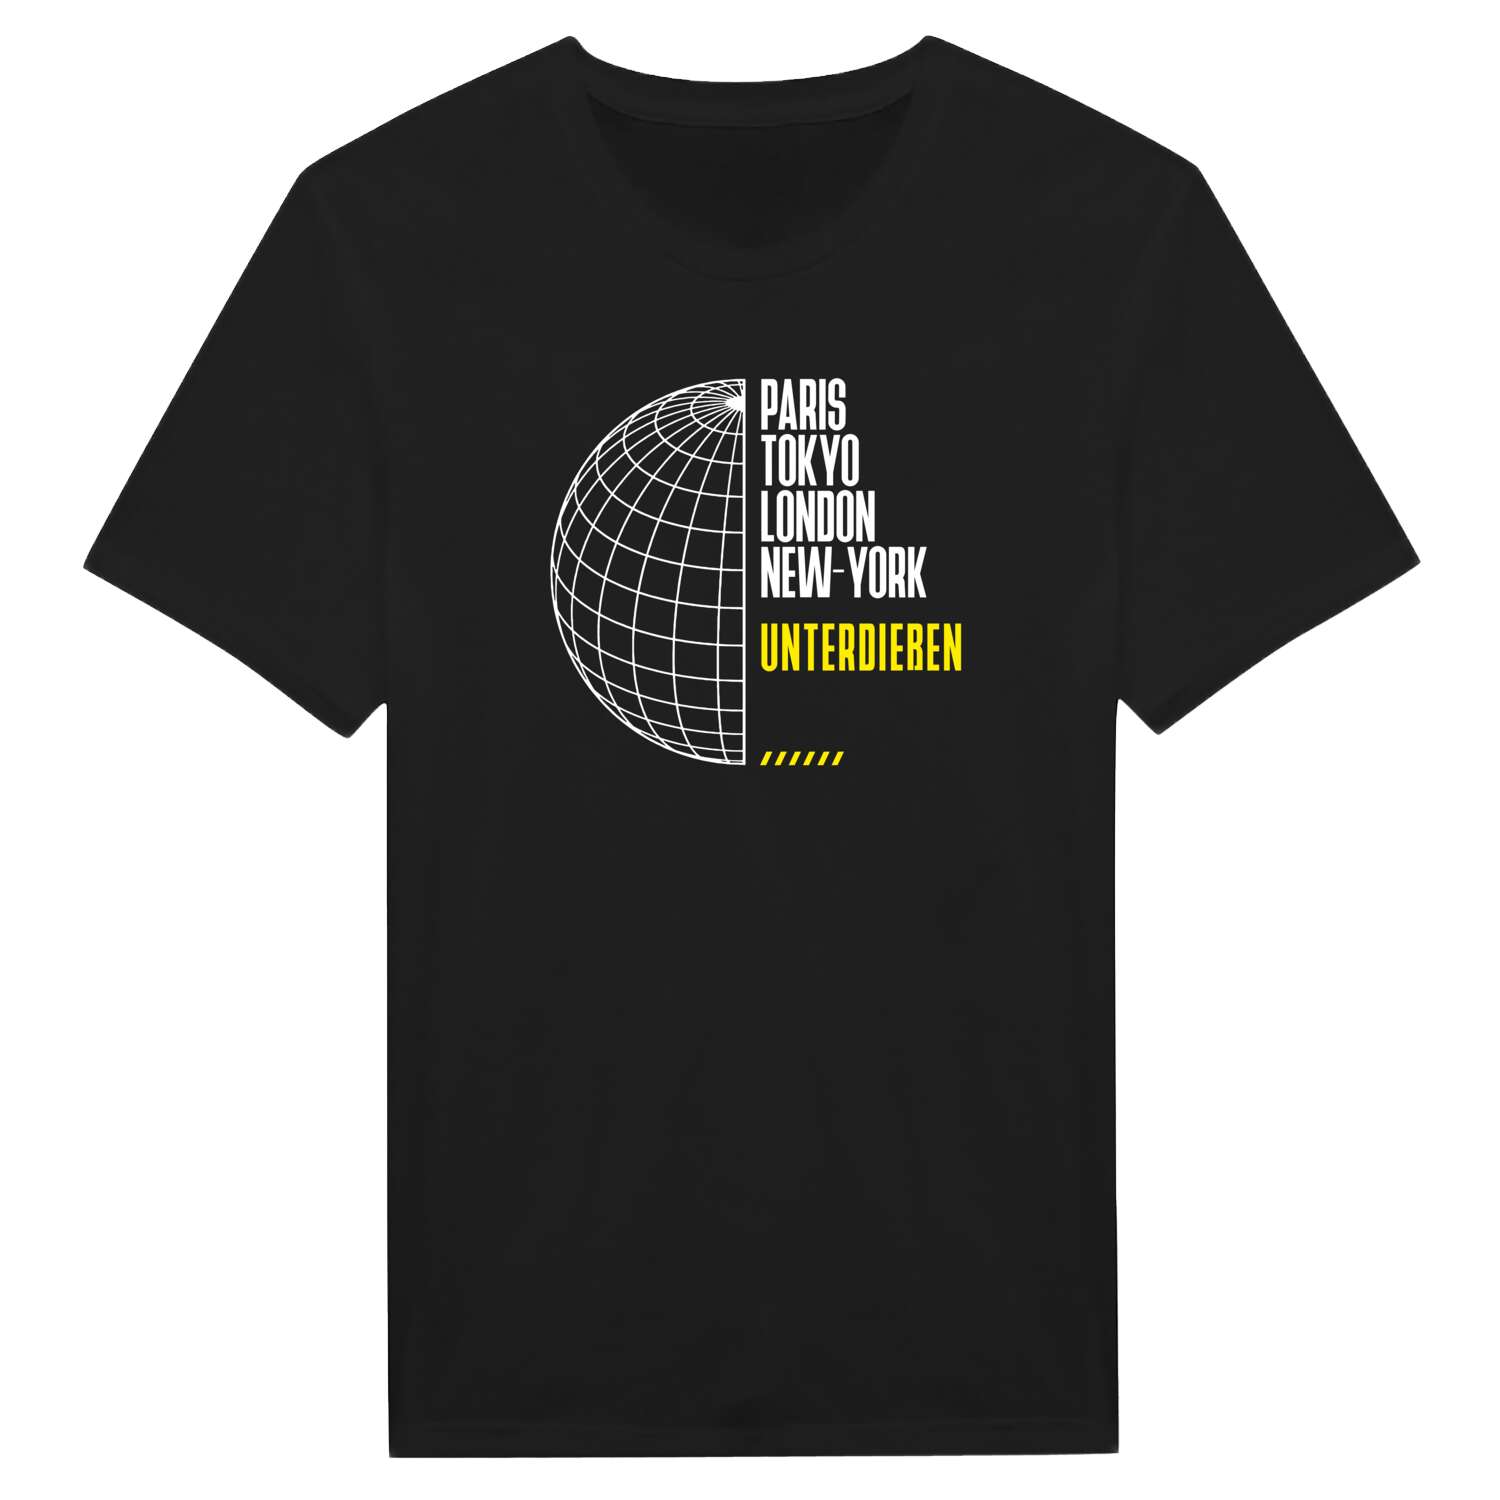 Unterdießen T-Shirt »Paris Tokyo London«